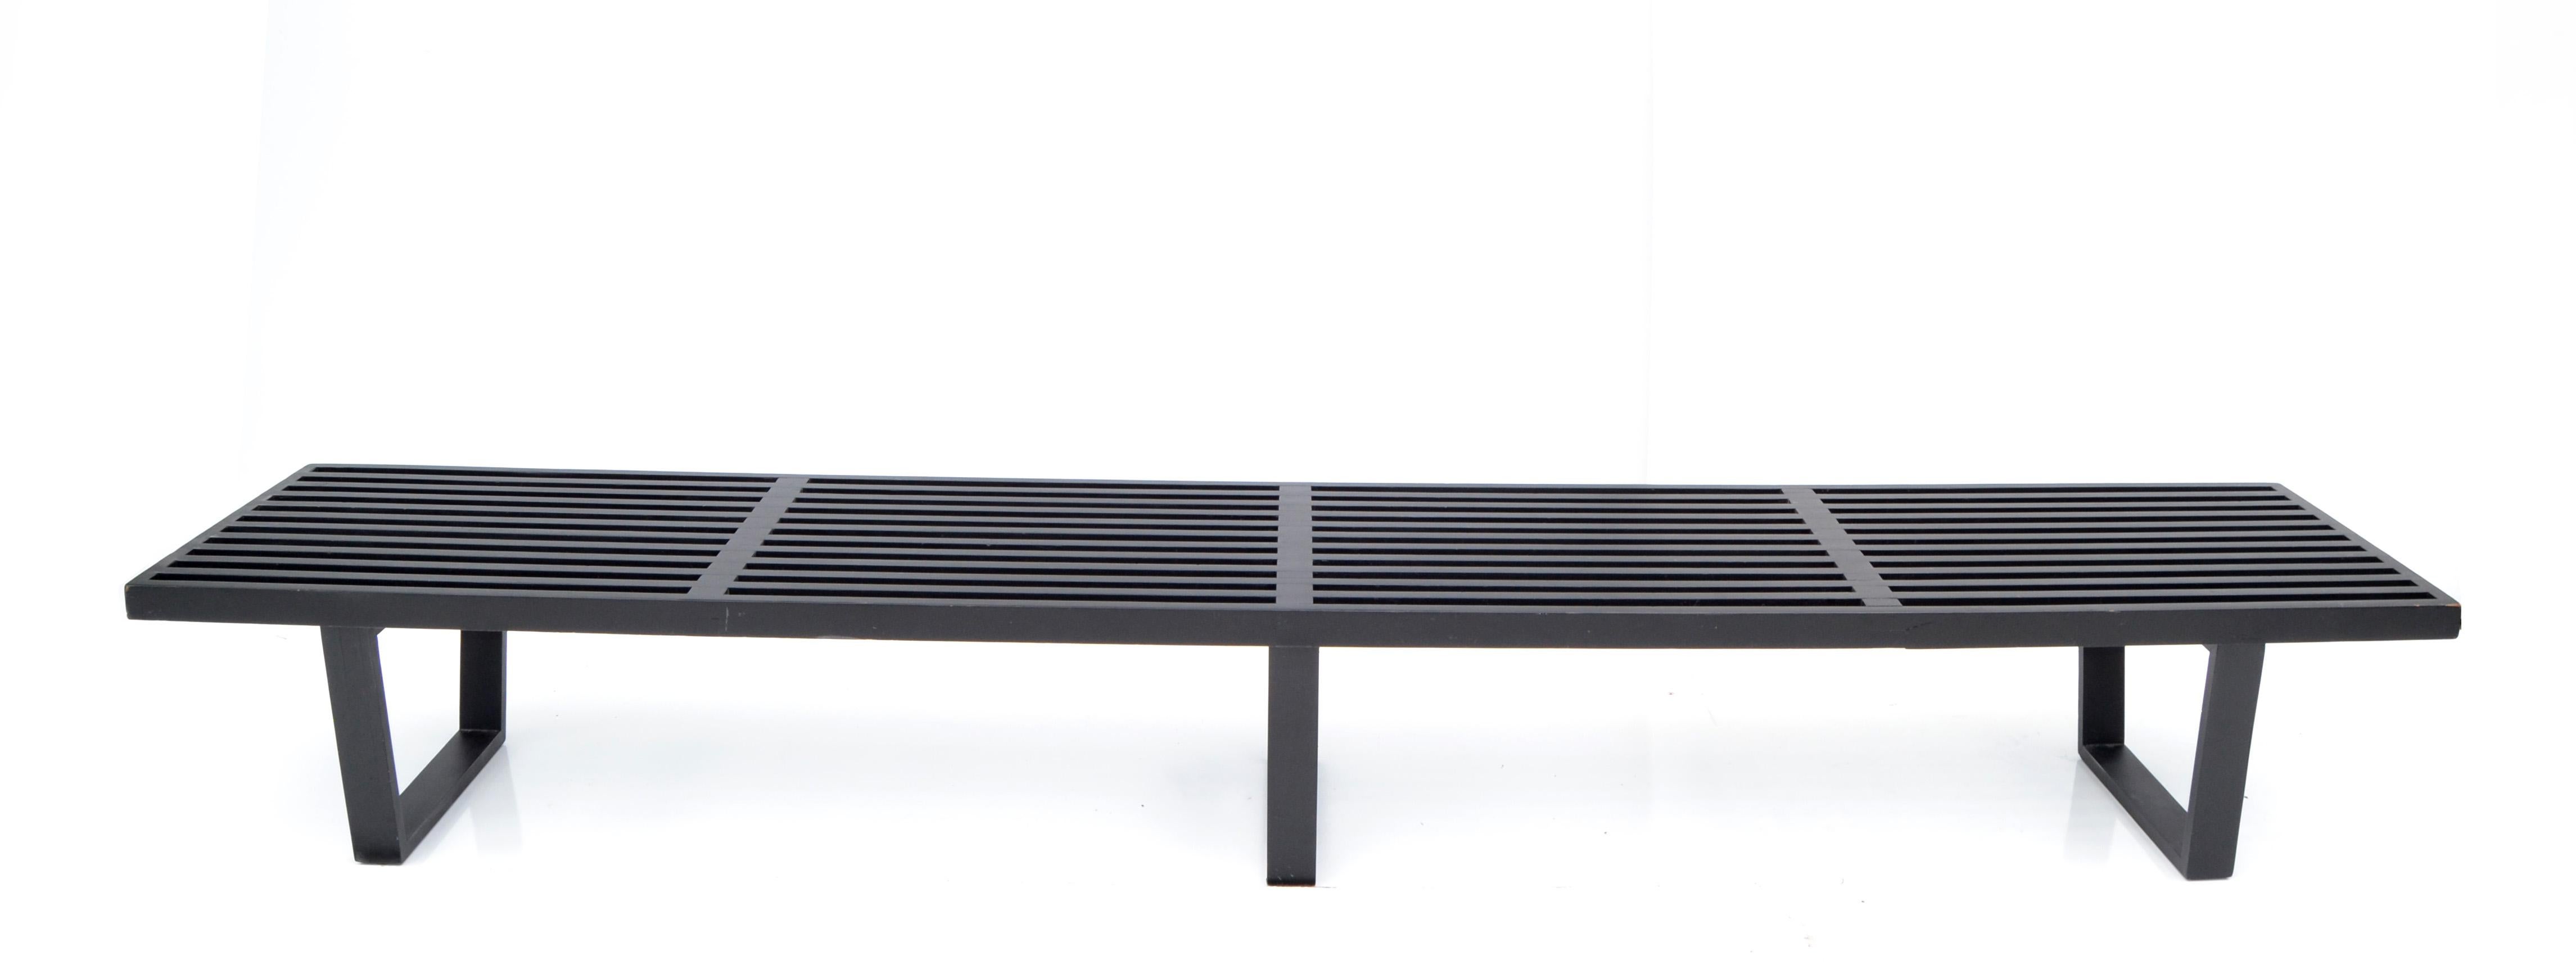 Original George Nelson early long slat bench aus ebonisiertem Birkenholz, entworfen in den 1950er Jahren und hergestellt von Herman Miller.
Hervorragend geeignet für eine Flurbank, auf der die Kinder Schuhe und Kleidung wechseln können, oder sogar